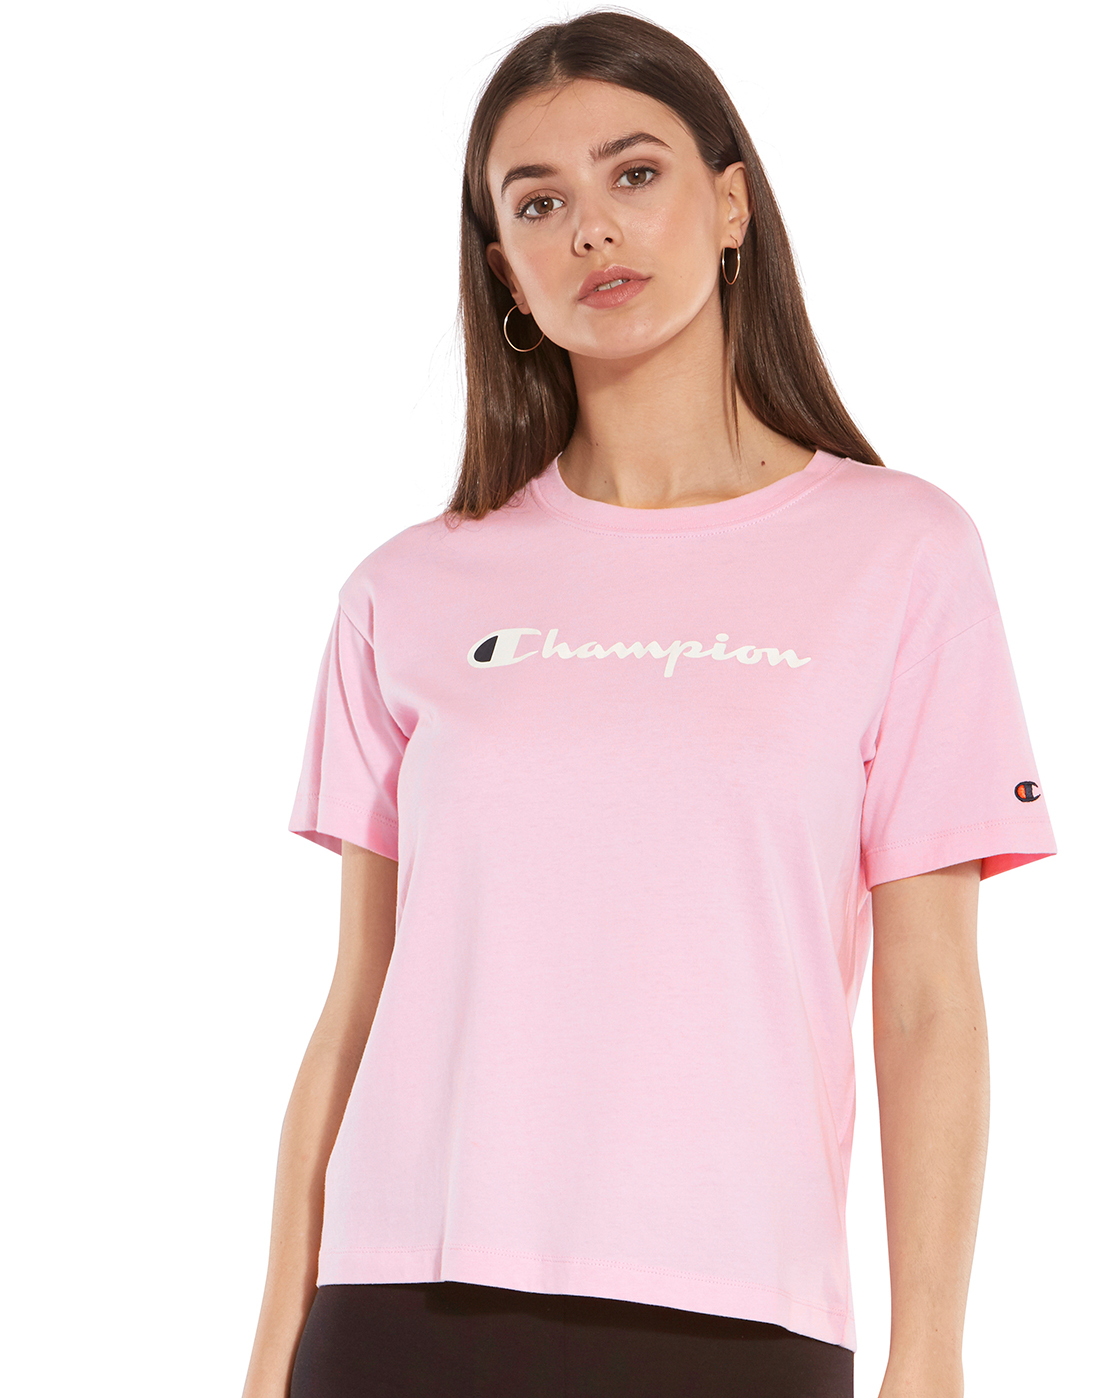 womens pink champion t shirt